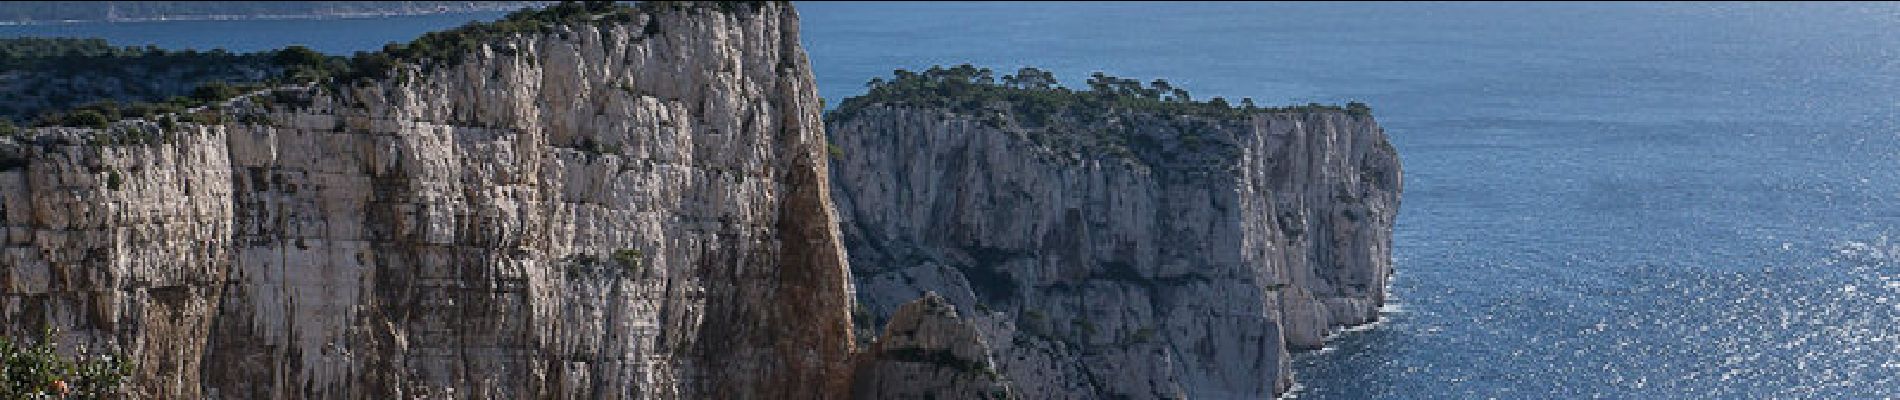 Randonnée Marche Marseille - Traversée du Cap Gros par les Falaises du Devenson depuis le Col de la Gardiole - Photo